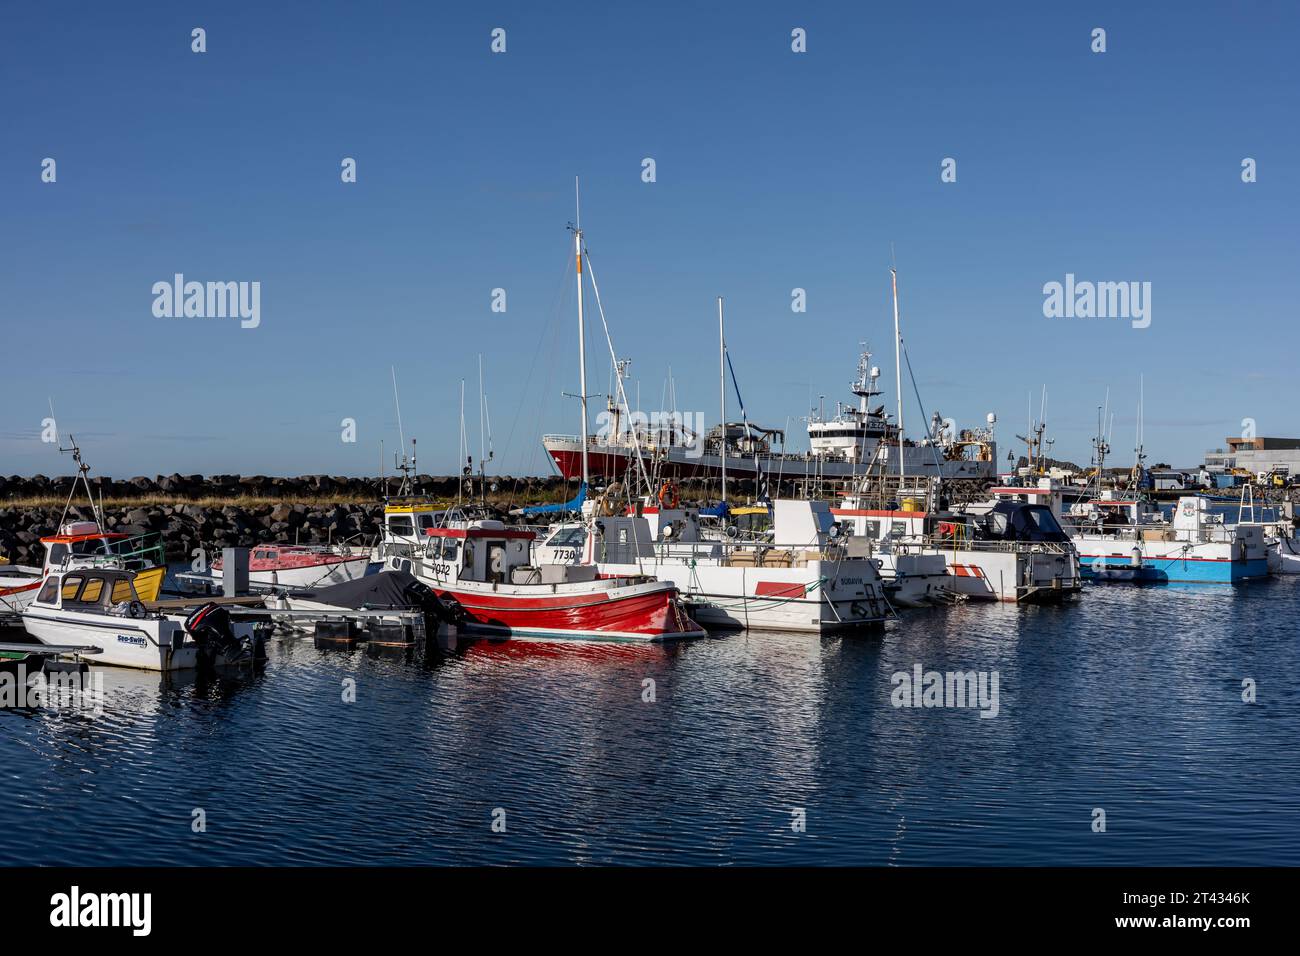 Reykjavik, Islande - 25 septembre 2023 : bateaux de pêche colorés et voiliers amarrés dans le port de Karsnes, Kopavogur. Banque D'Images